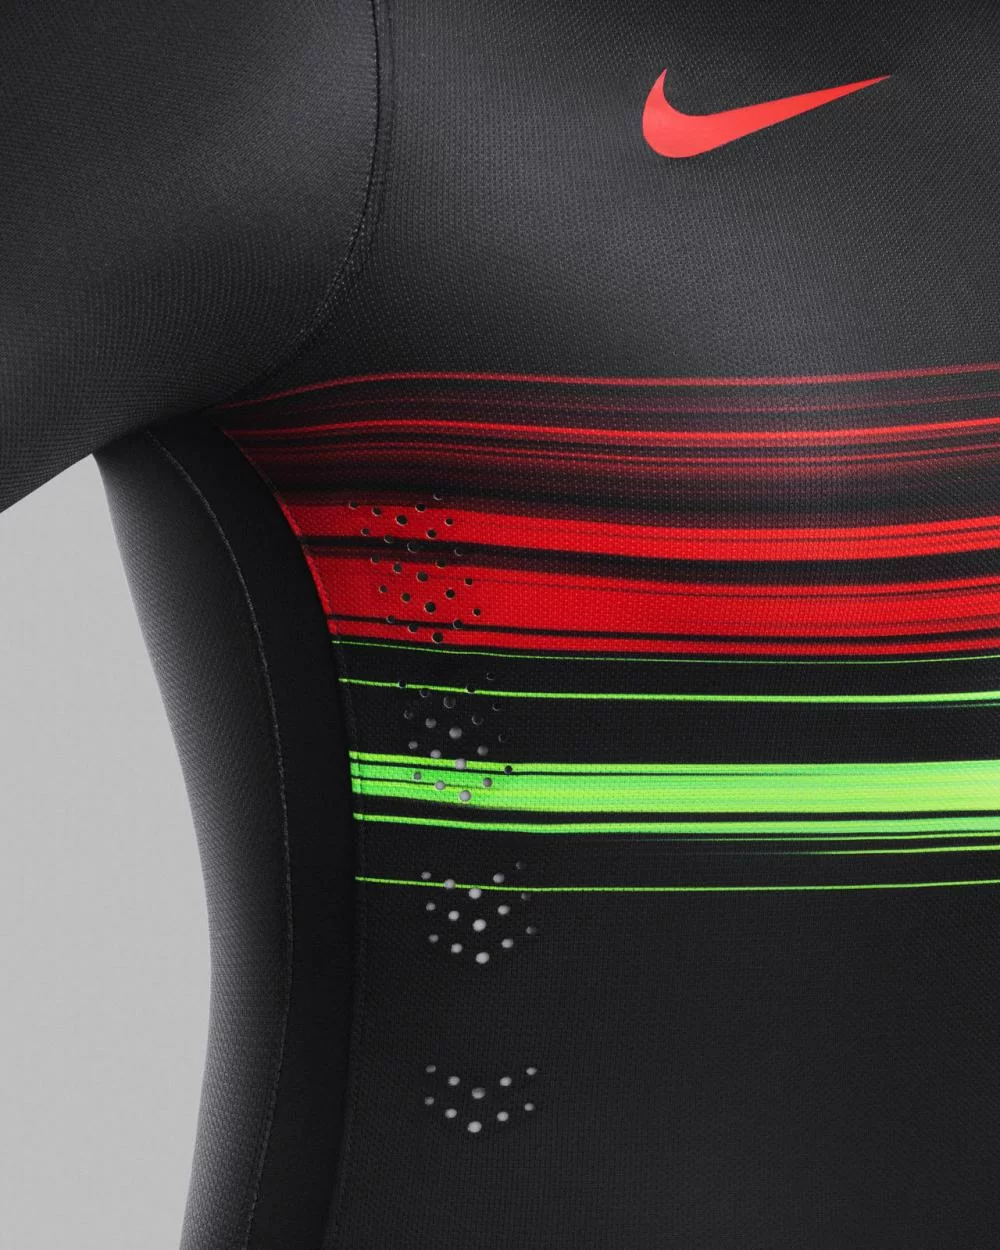 PHOTOGALLERY – La Nike presenta la nuova maglia del Portogallo: novità nei colori